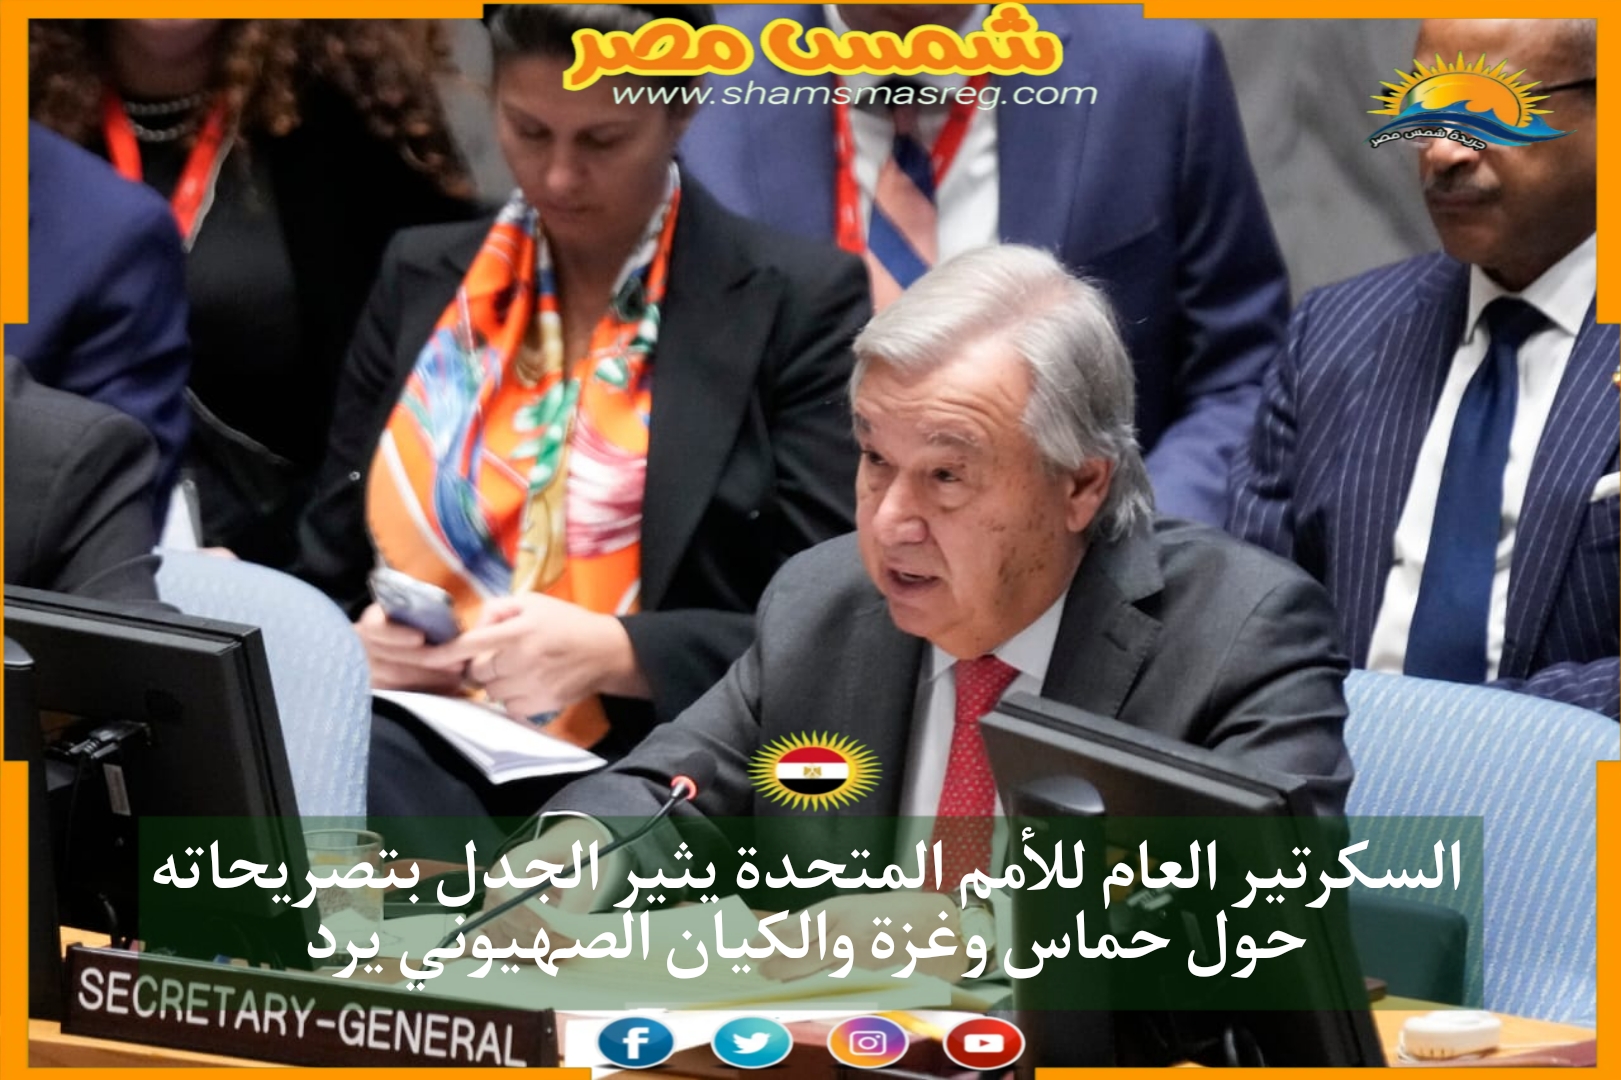 السكرتير العام للأمم المتحدة يثير الجدل بتصريحاته حول حماس وغزة والكيان الصهيوني يرد